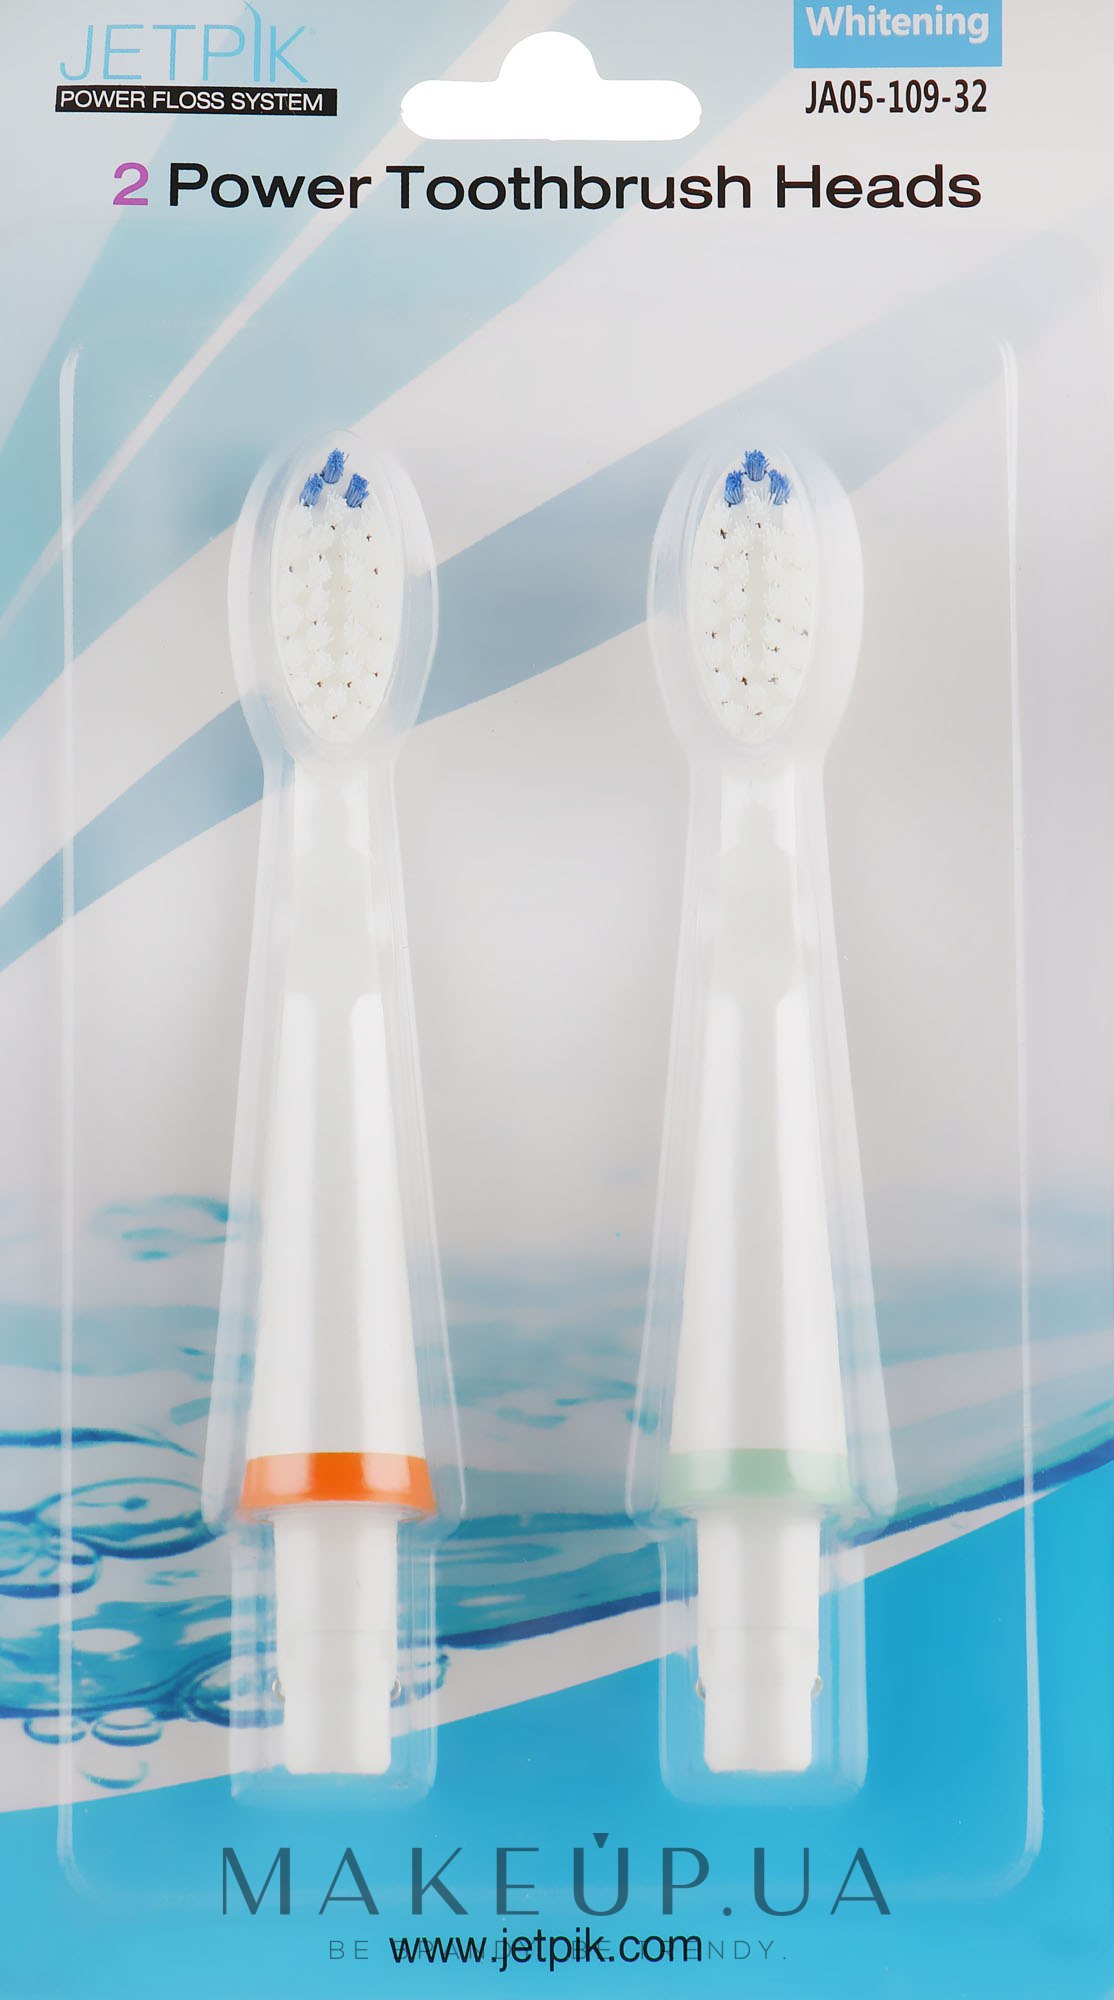 Насадки для іригатора - Jetpik 2 Power Toothbrush Heads Whitening — фото 2шт